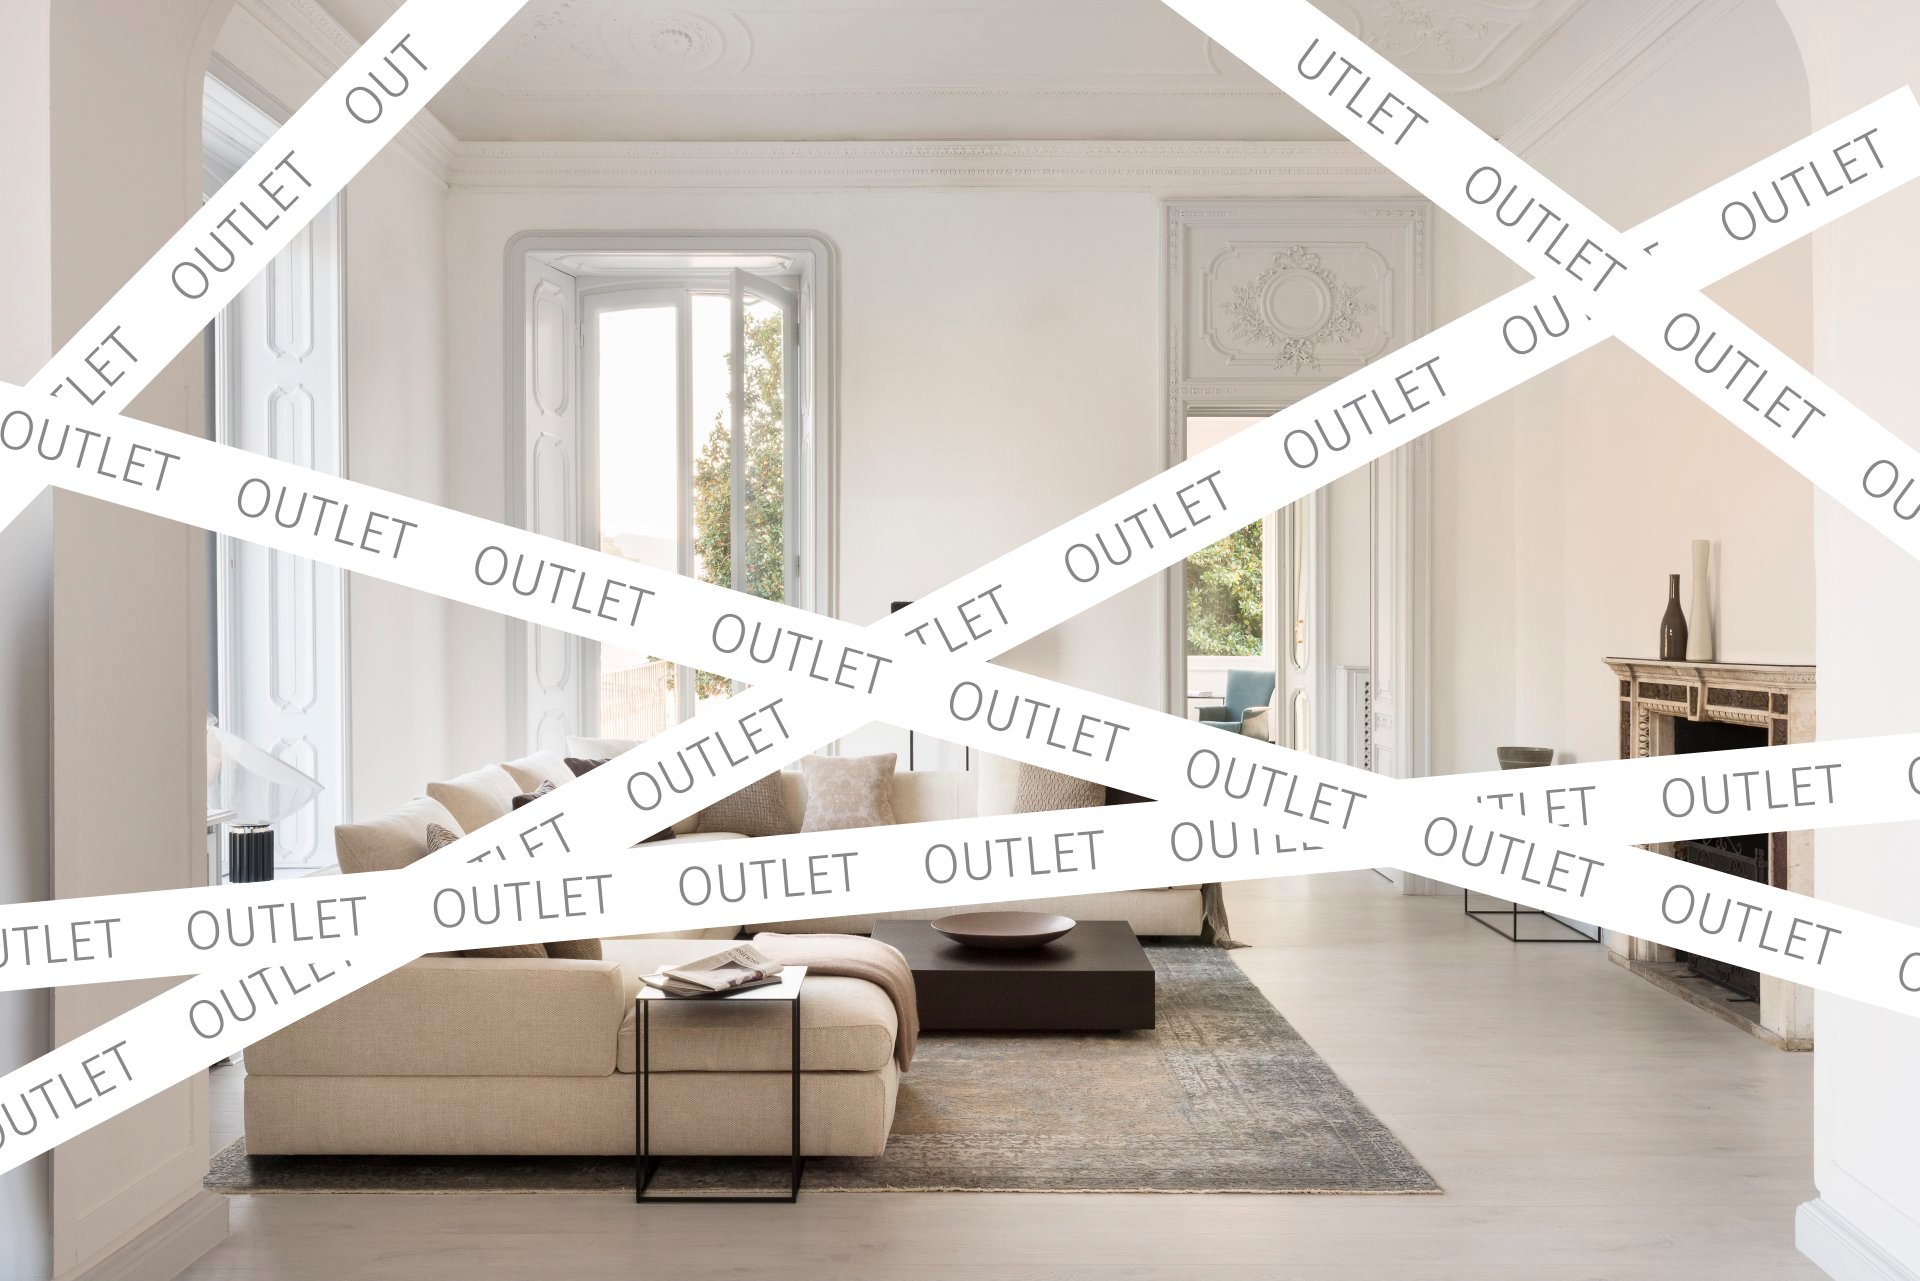 reactie geld Trek Outlet | Zitcomfort aan comfortprijzen | Design meubelen | JORI